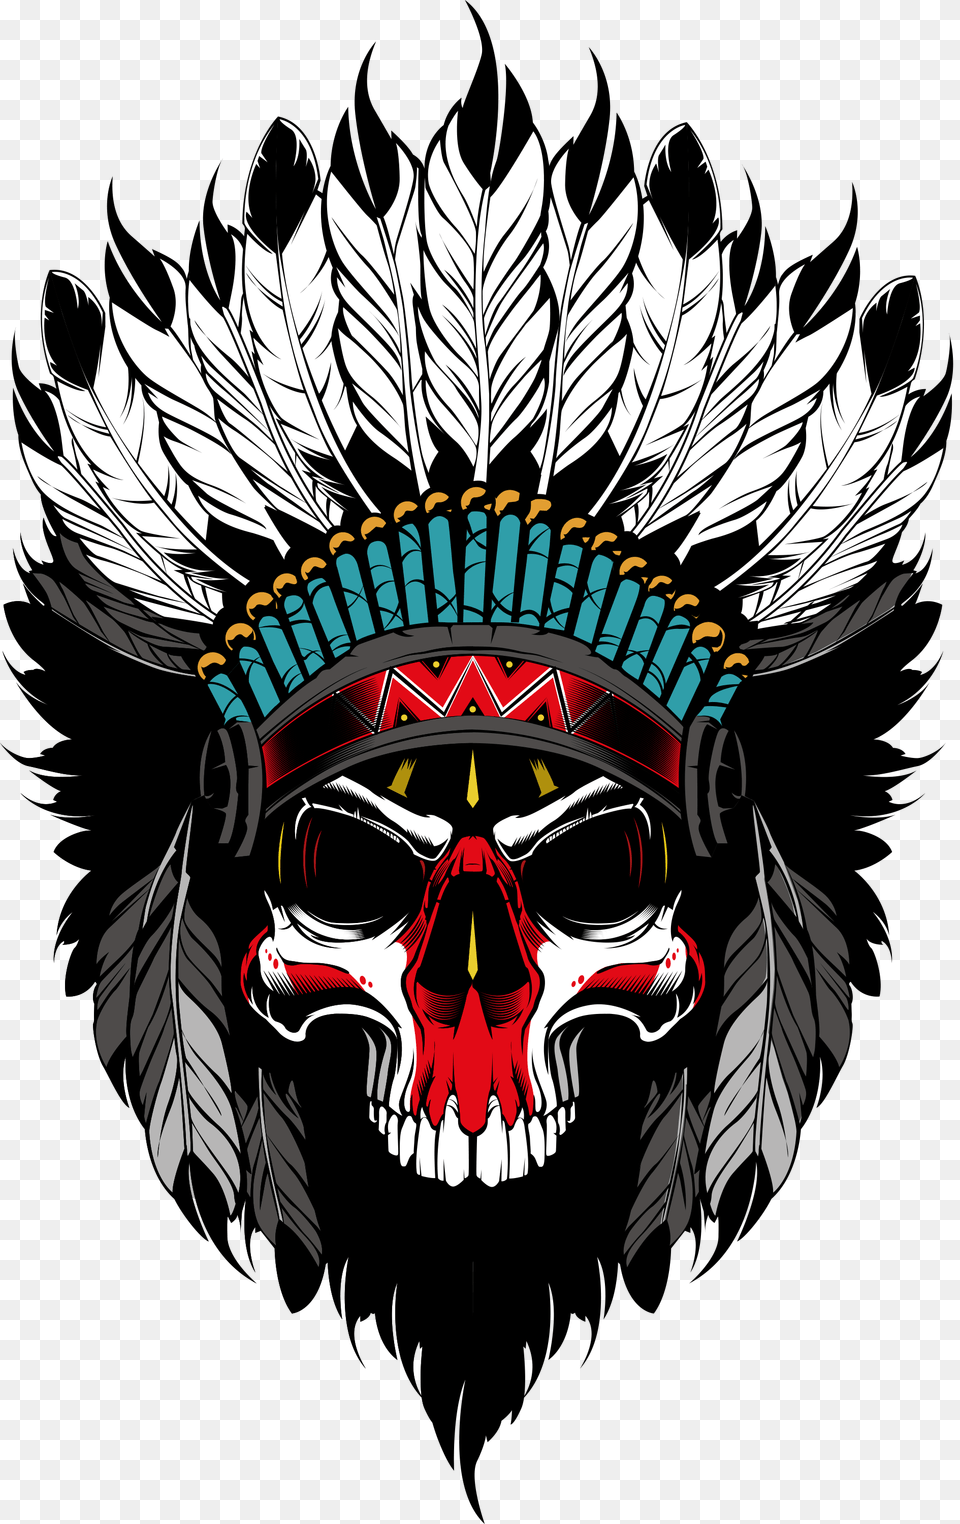 Indians Skull Fabric Pattern Skull Art Skull, Emblem, Symbol, Person, Face Png